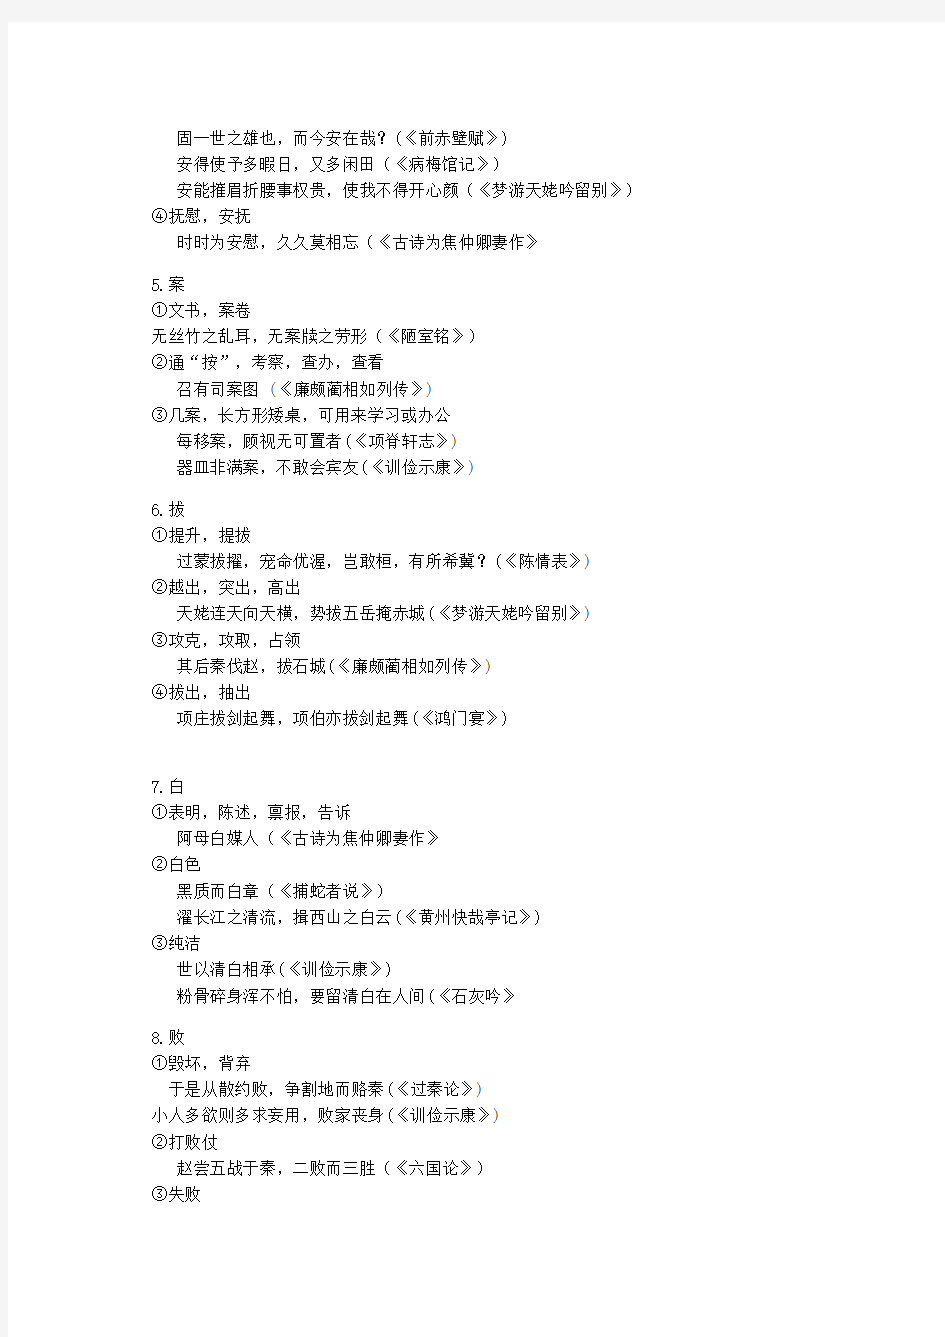 上海高考300文言实词整理(全)资料